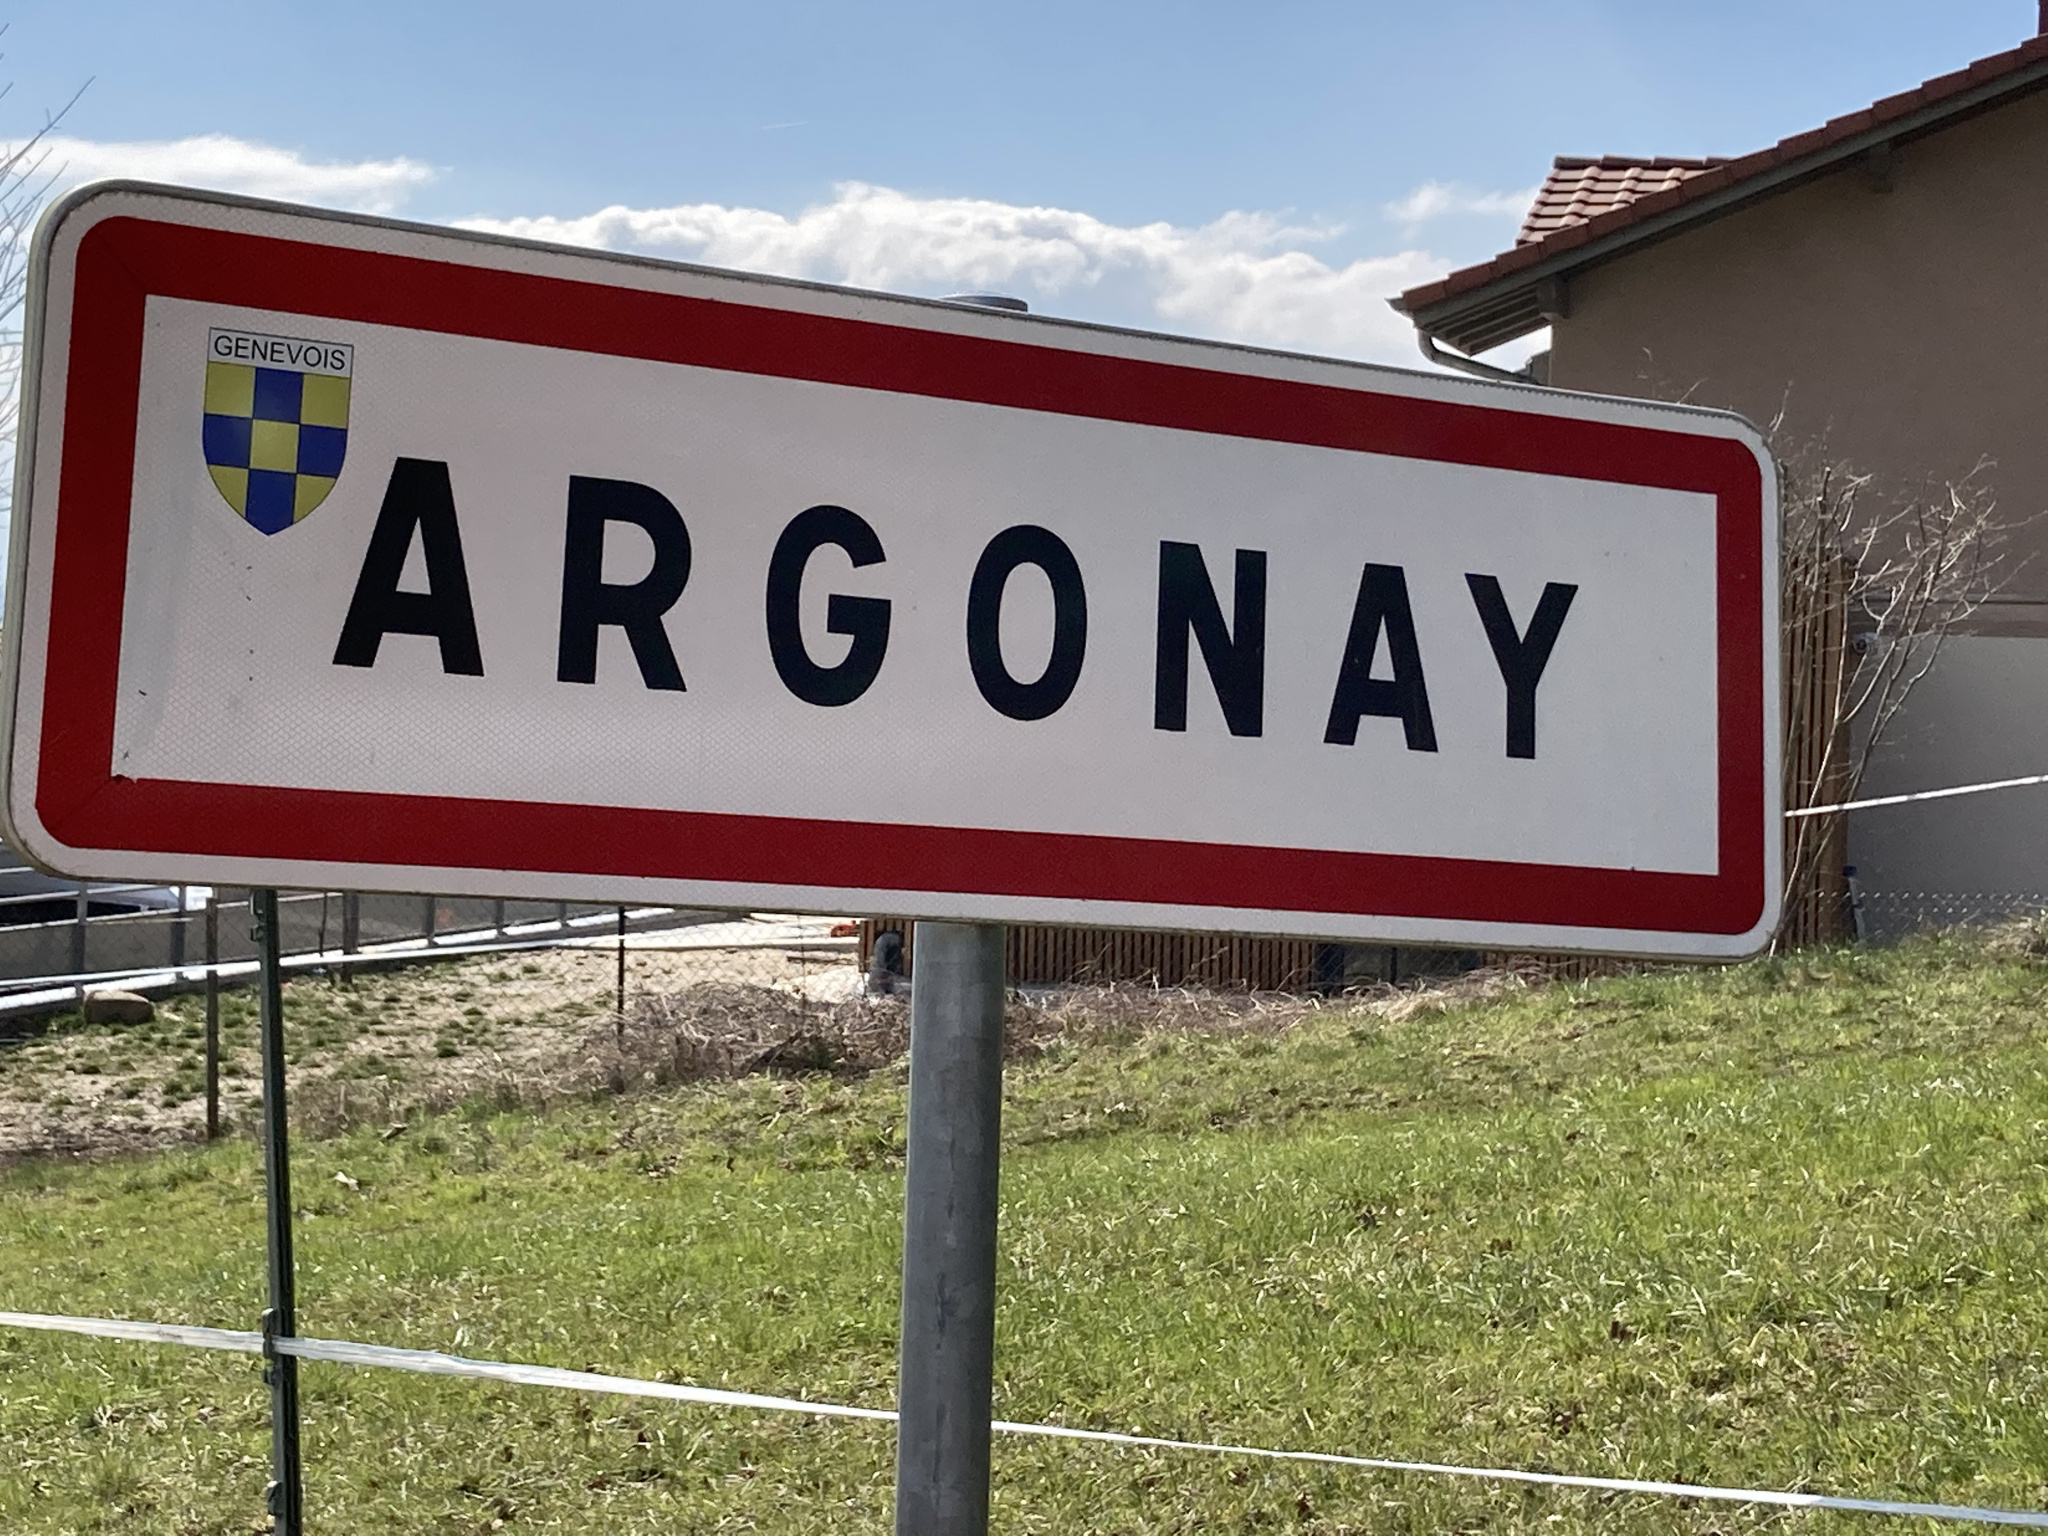 Terrain  - 629m² - ARGONAY